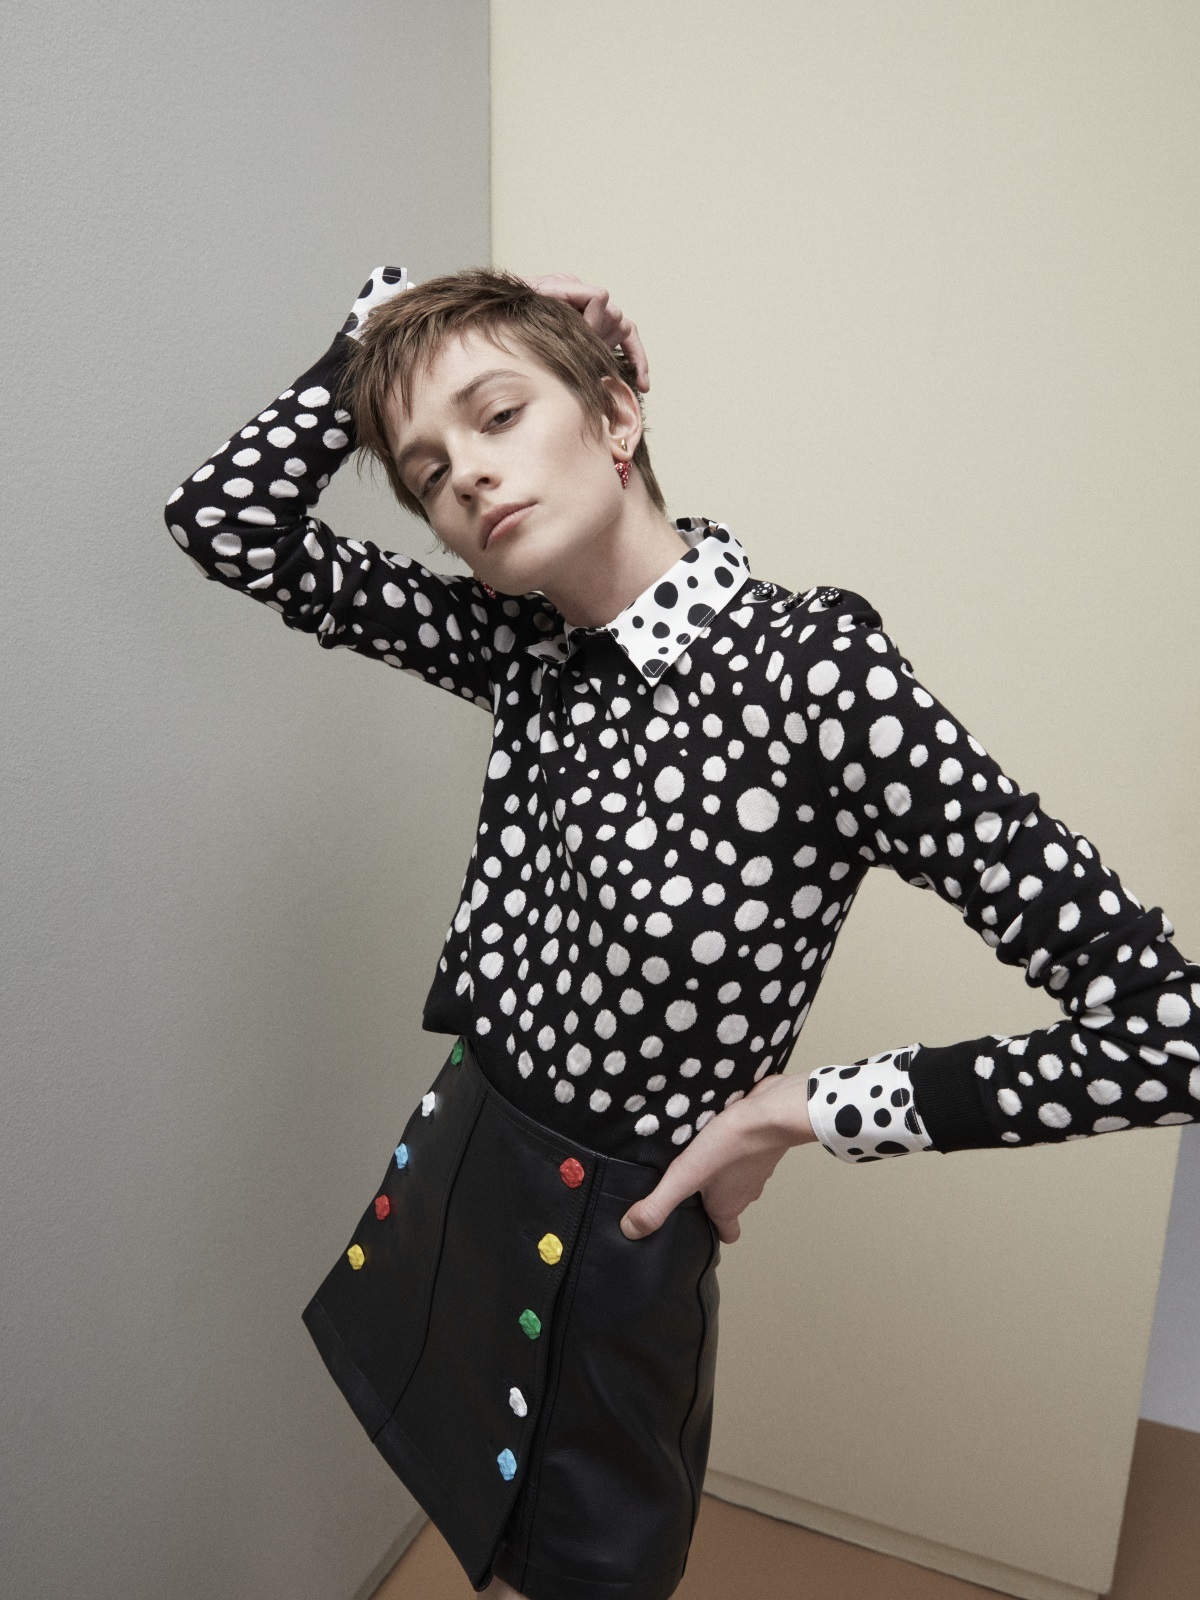 La modelo Sophie Dominique con camisa de seda y jersey Infinite Dots, minifalda de piel con botones esculturales y pendientes Louisette, todo de la colección Louis Vuitton x Yayoi Kusama.